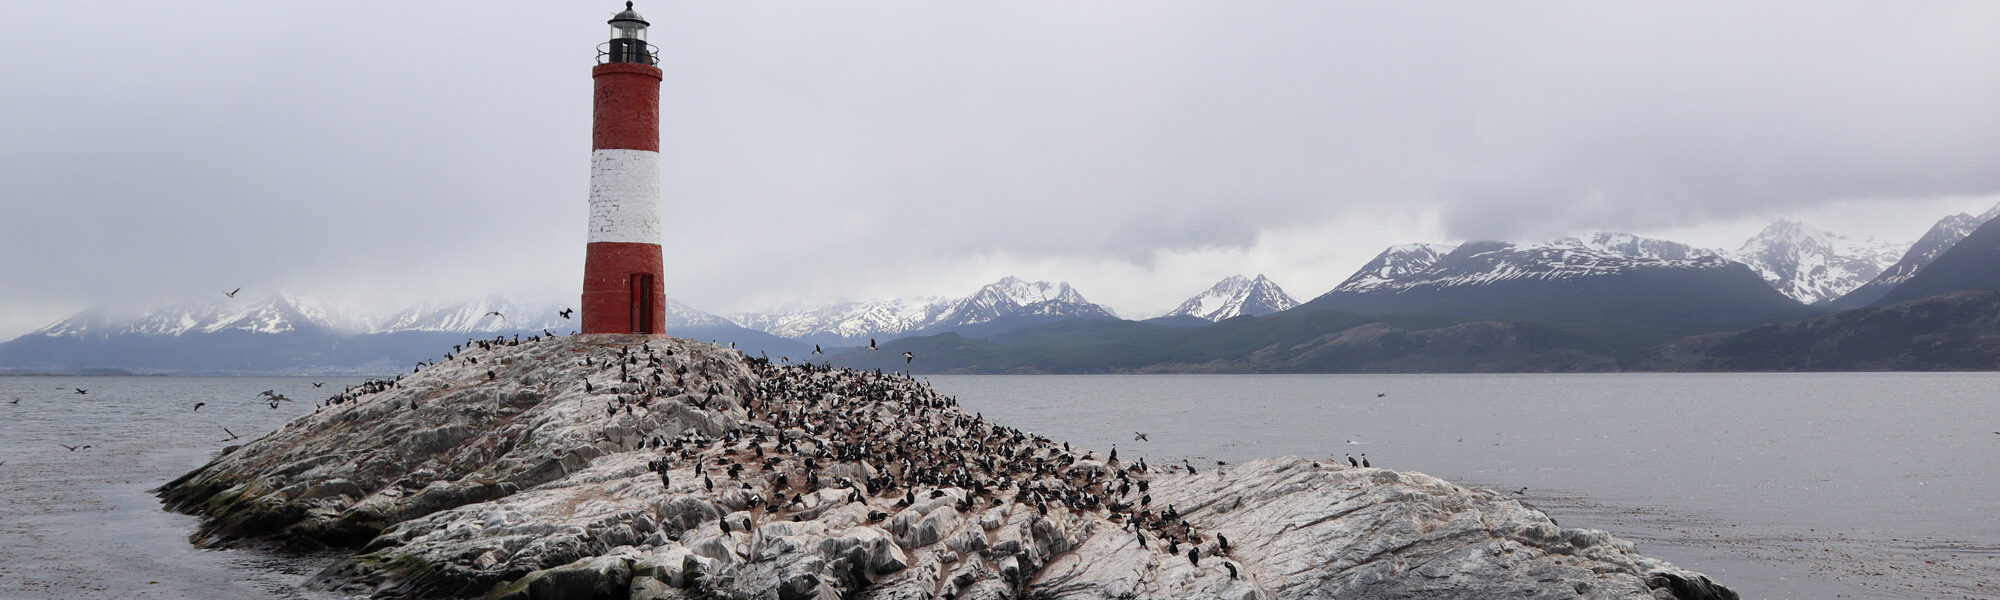 Patagonië - Beaglekanaal - Faro les Eclaireurs